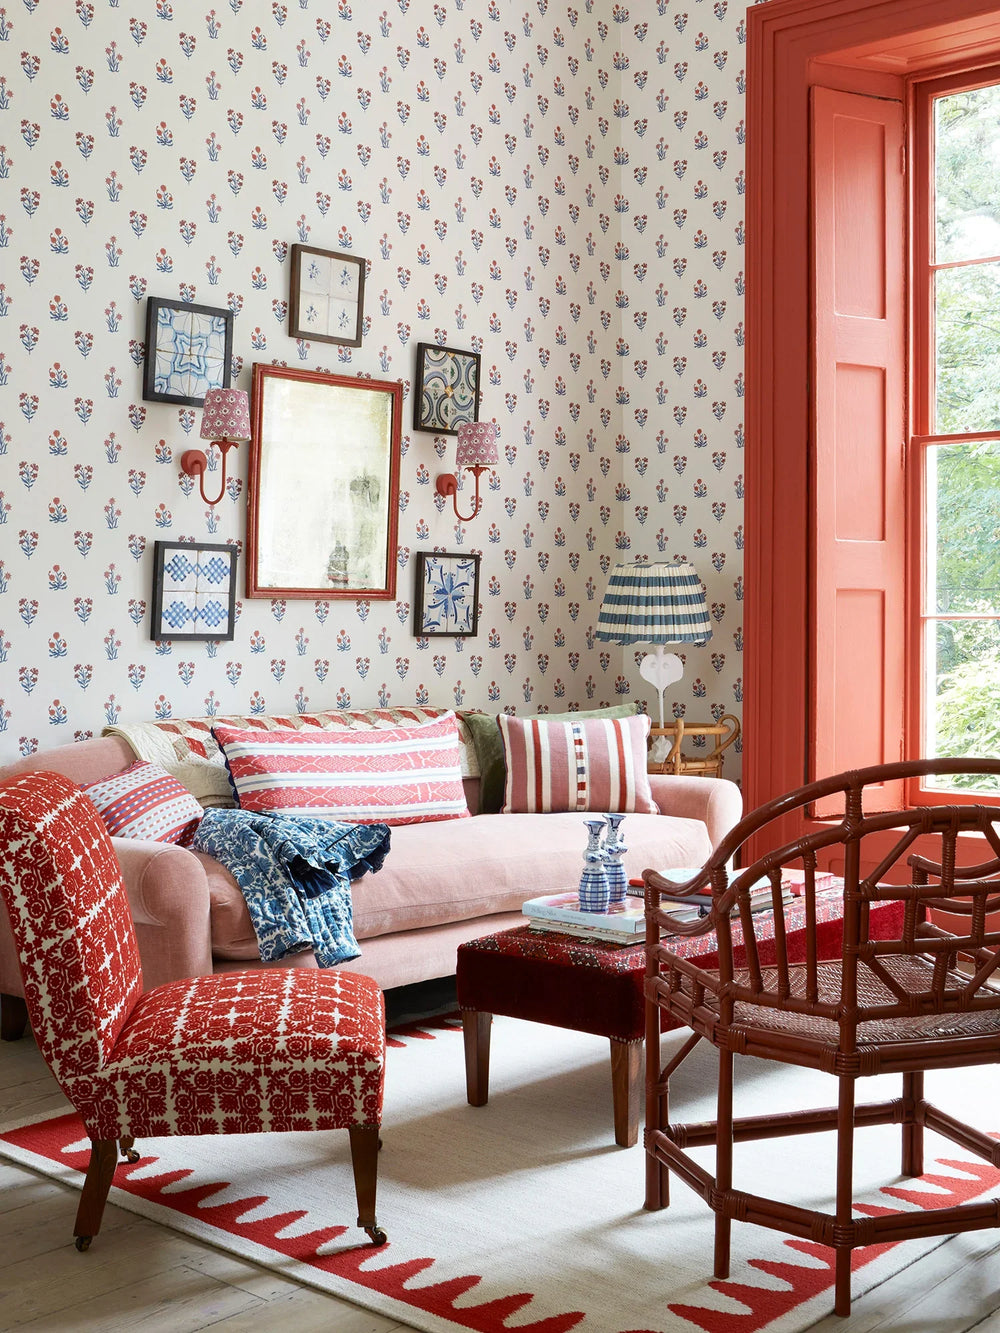 jaipur-flower-wallpaper-block-printed-indian-textile-design-dado-atelier-ruby-red-interior-lounge